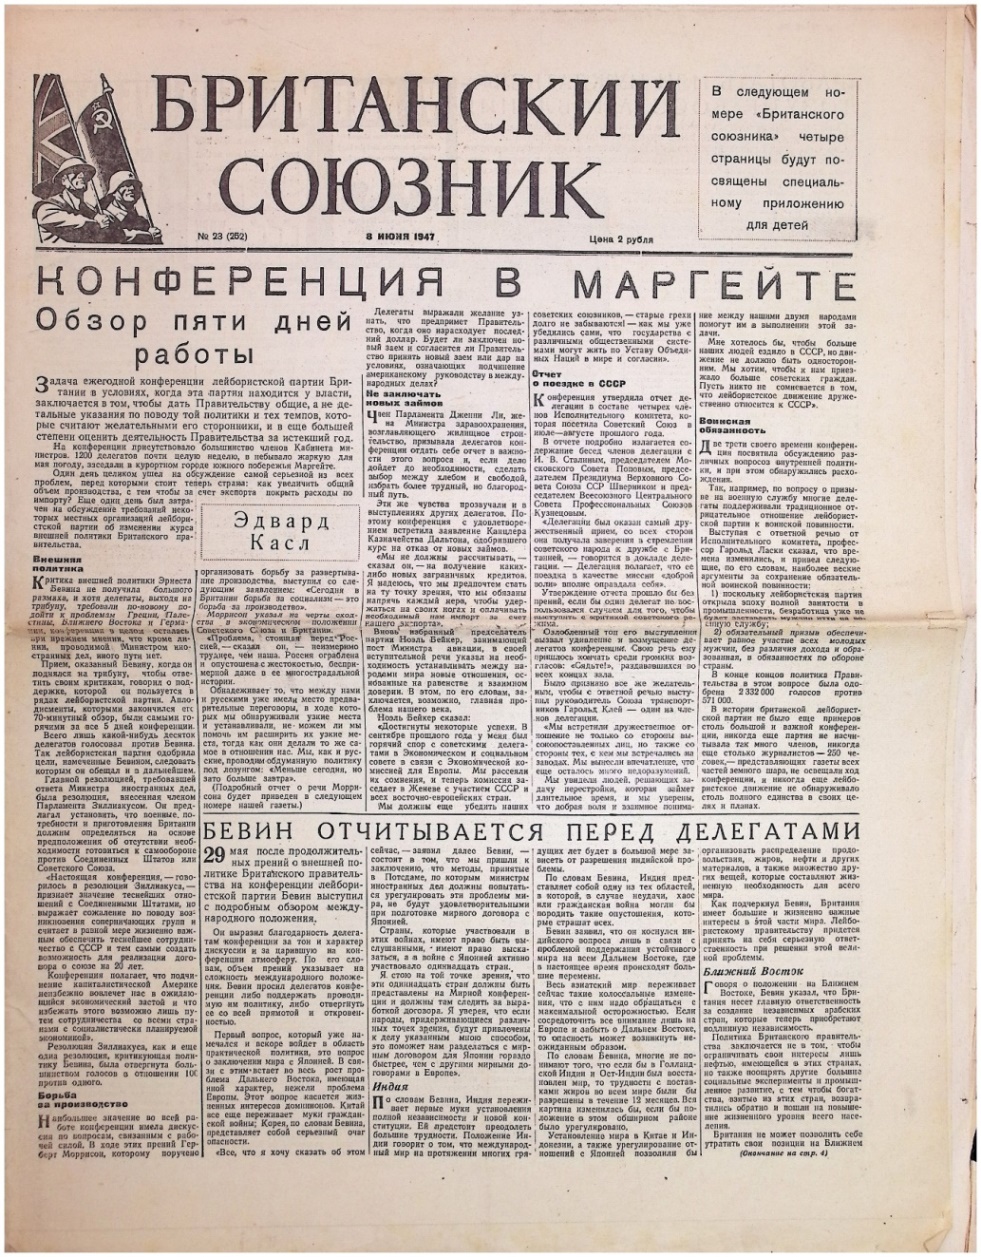 Газета "Британский союзник" № 23 (252) від 8 червня 1947р.